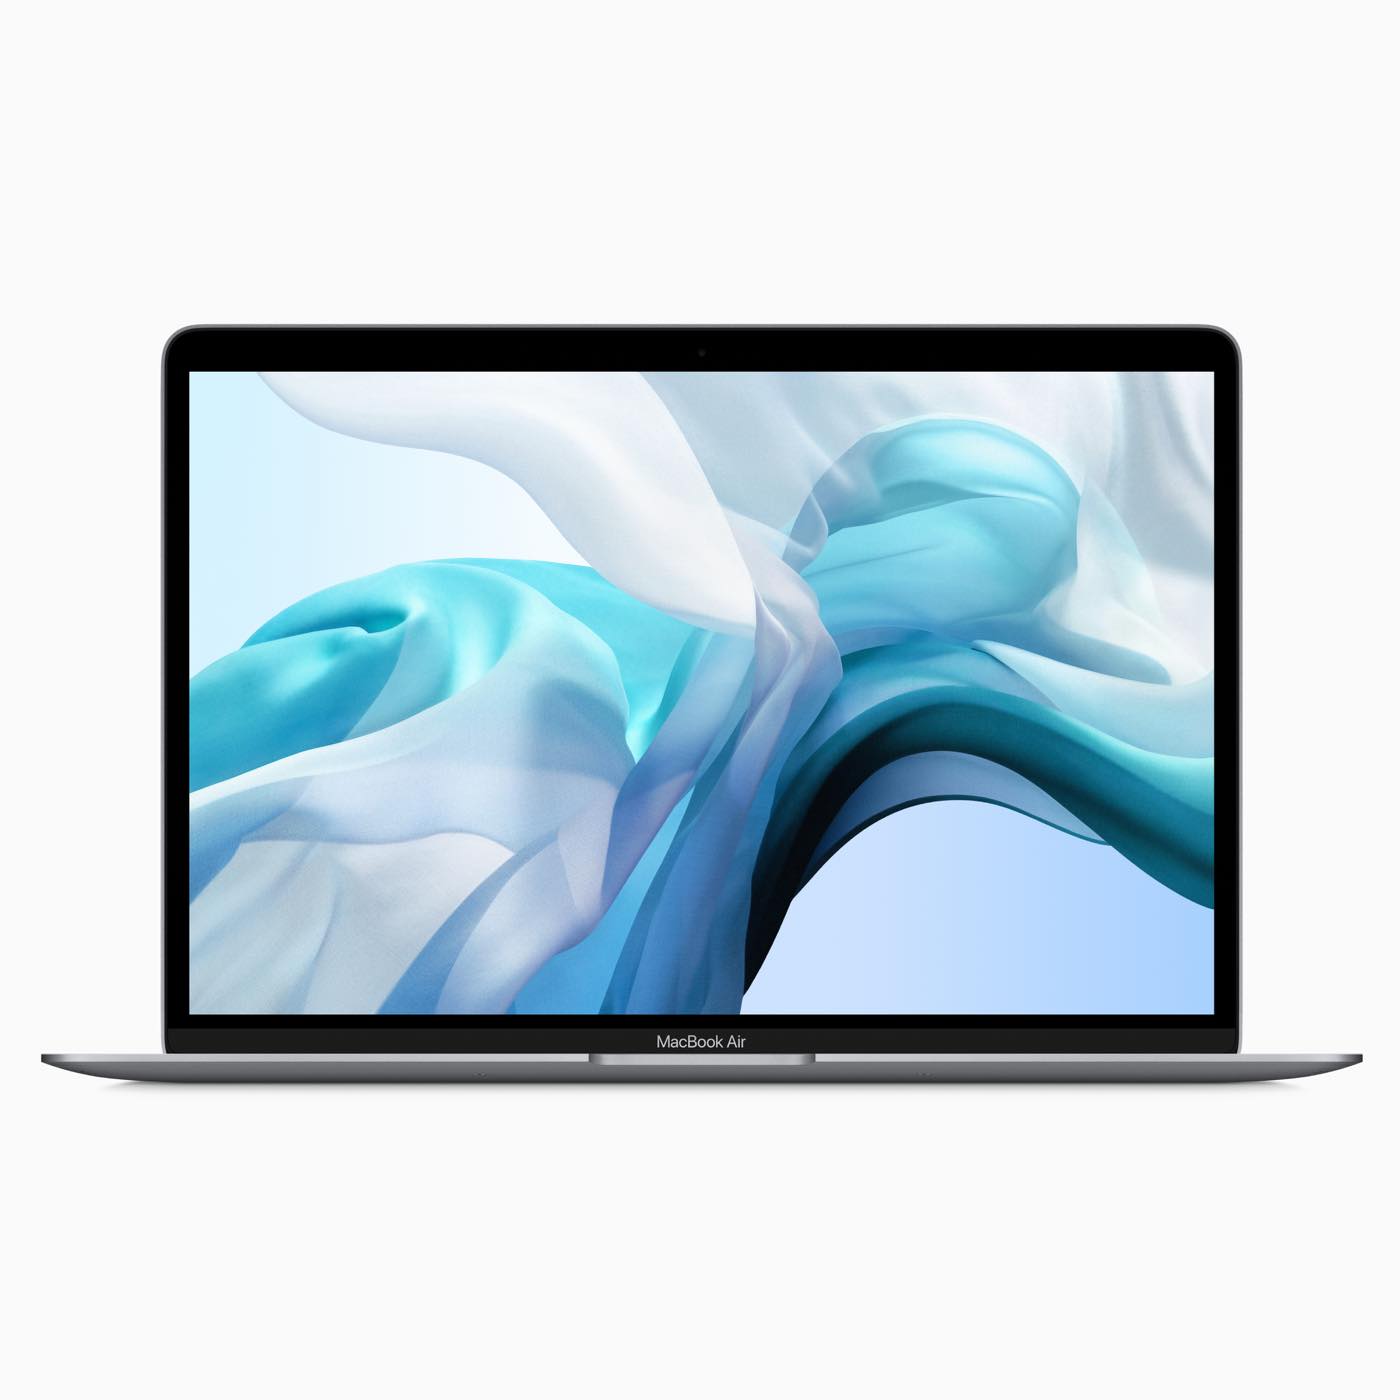 ｢MacBook Air (2019)｣のSSDの読み込み速度は旧モデルに比べると遅くなっている??